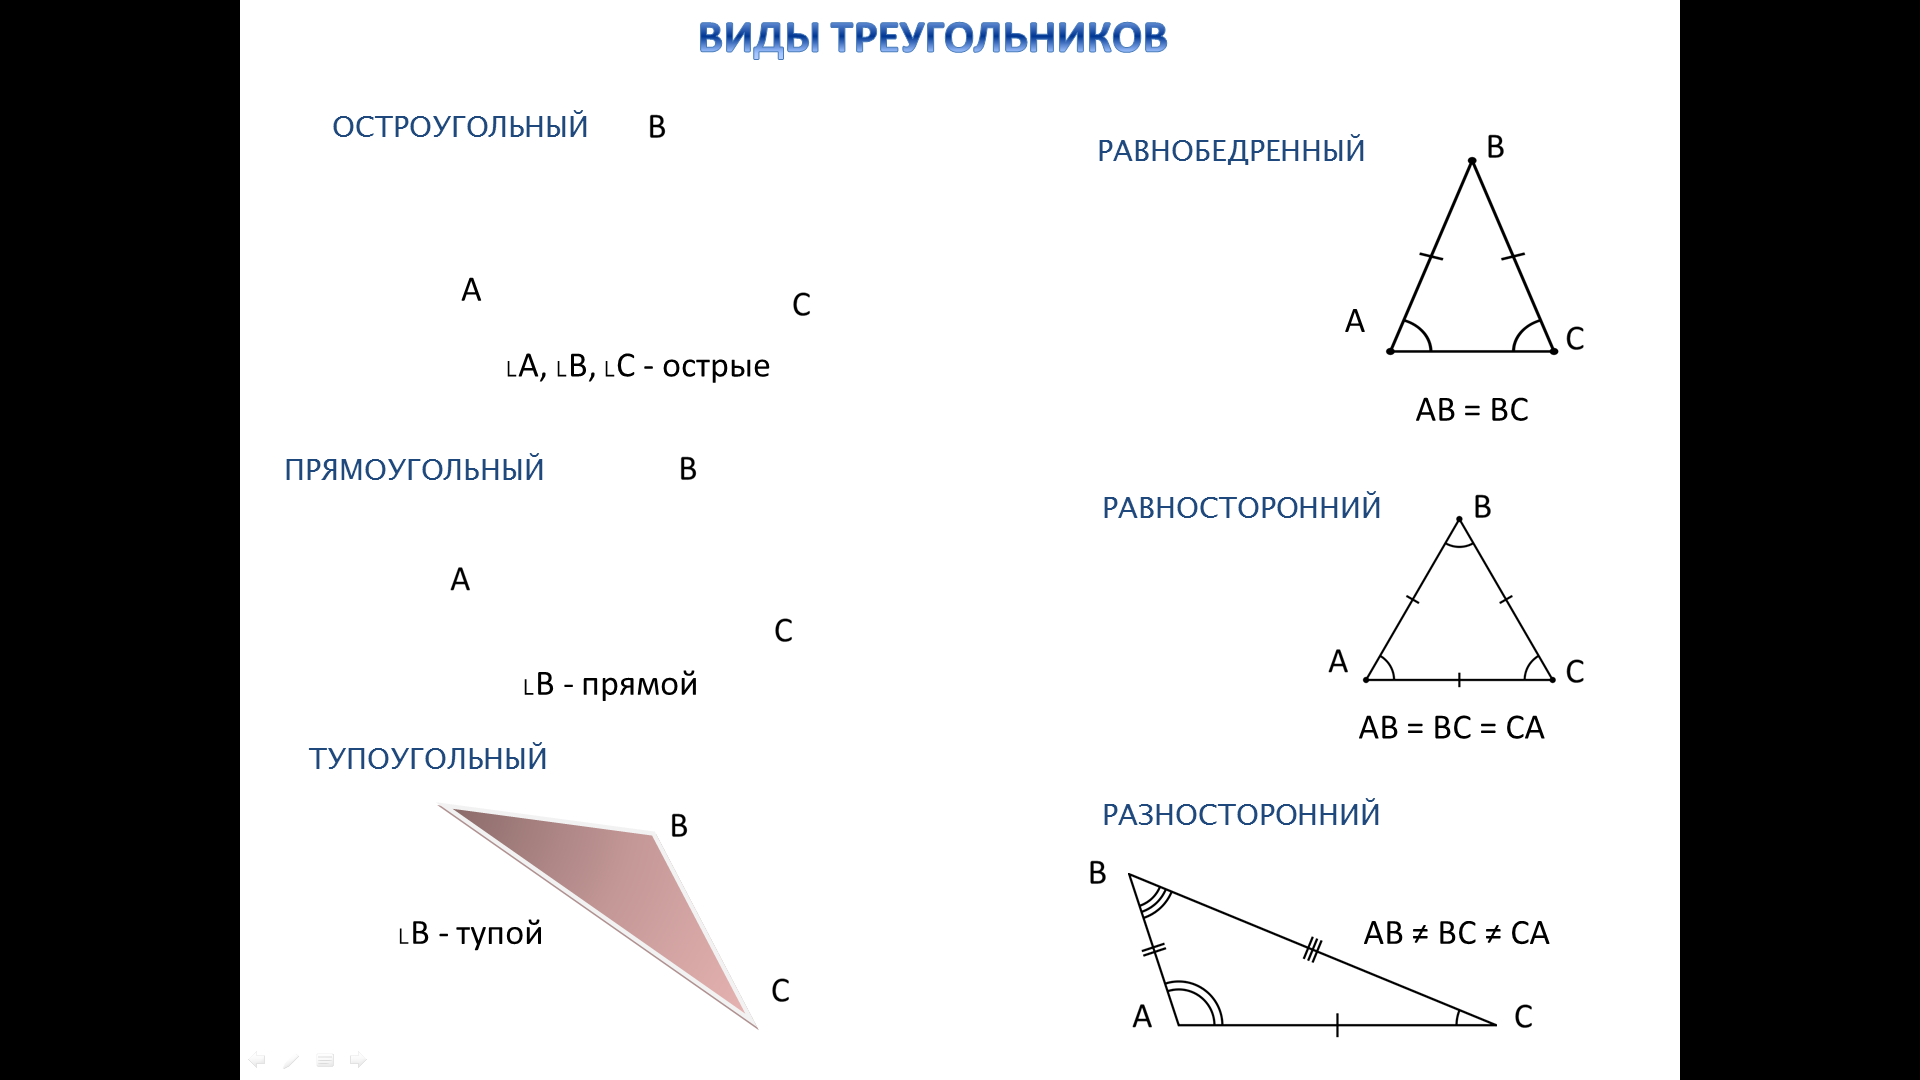 Виды треугольников. Равнобедренный остроугольный треугольник. Равнобедренный треугольник тупоугольный треугольник. Может ли тупоугольный треугольник быть равнобедренным